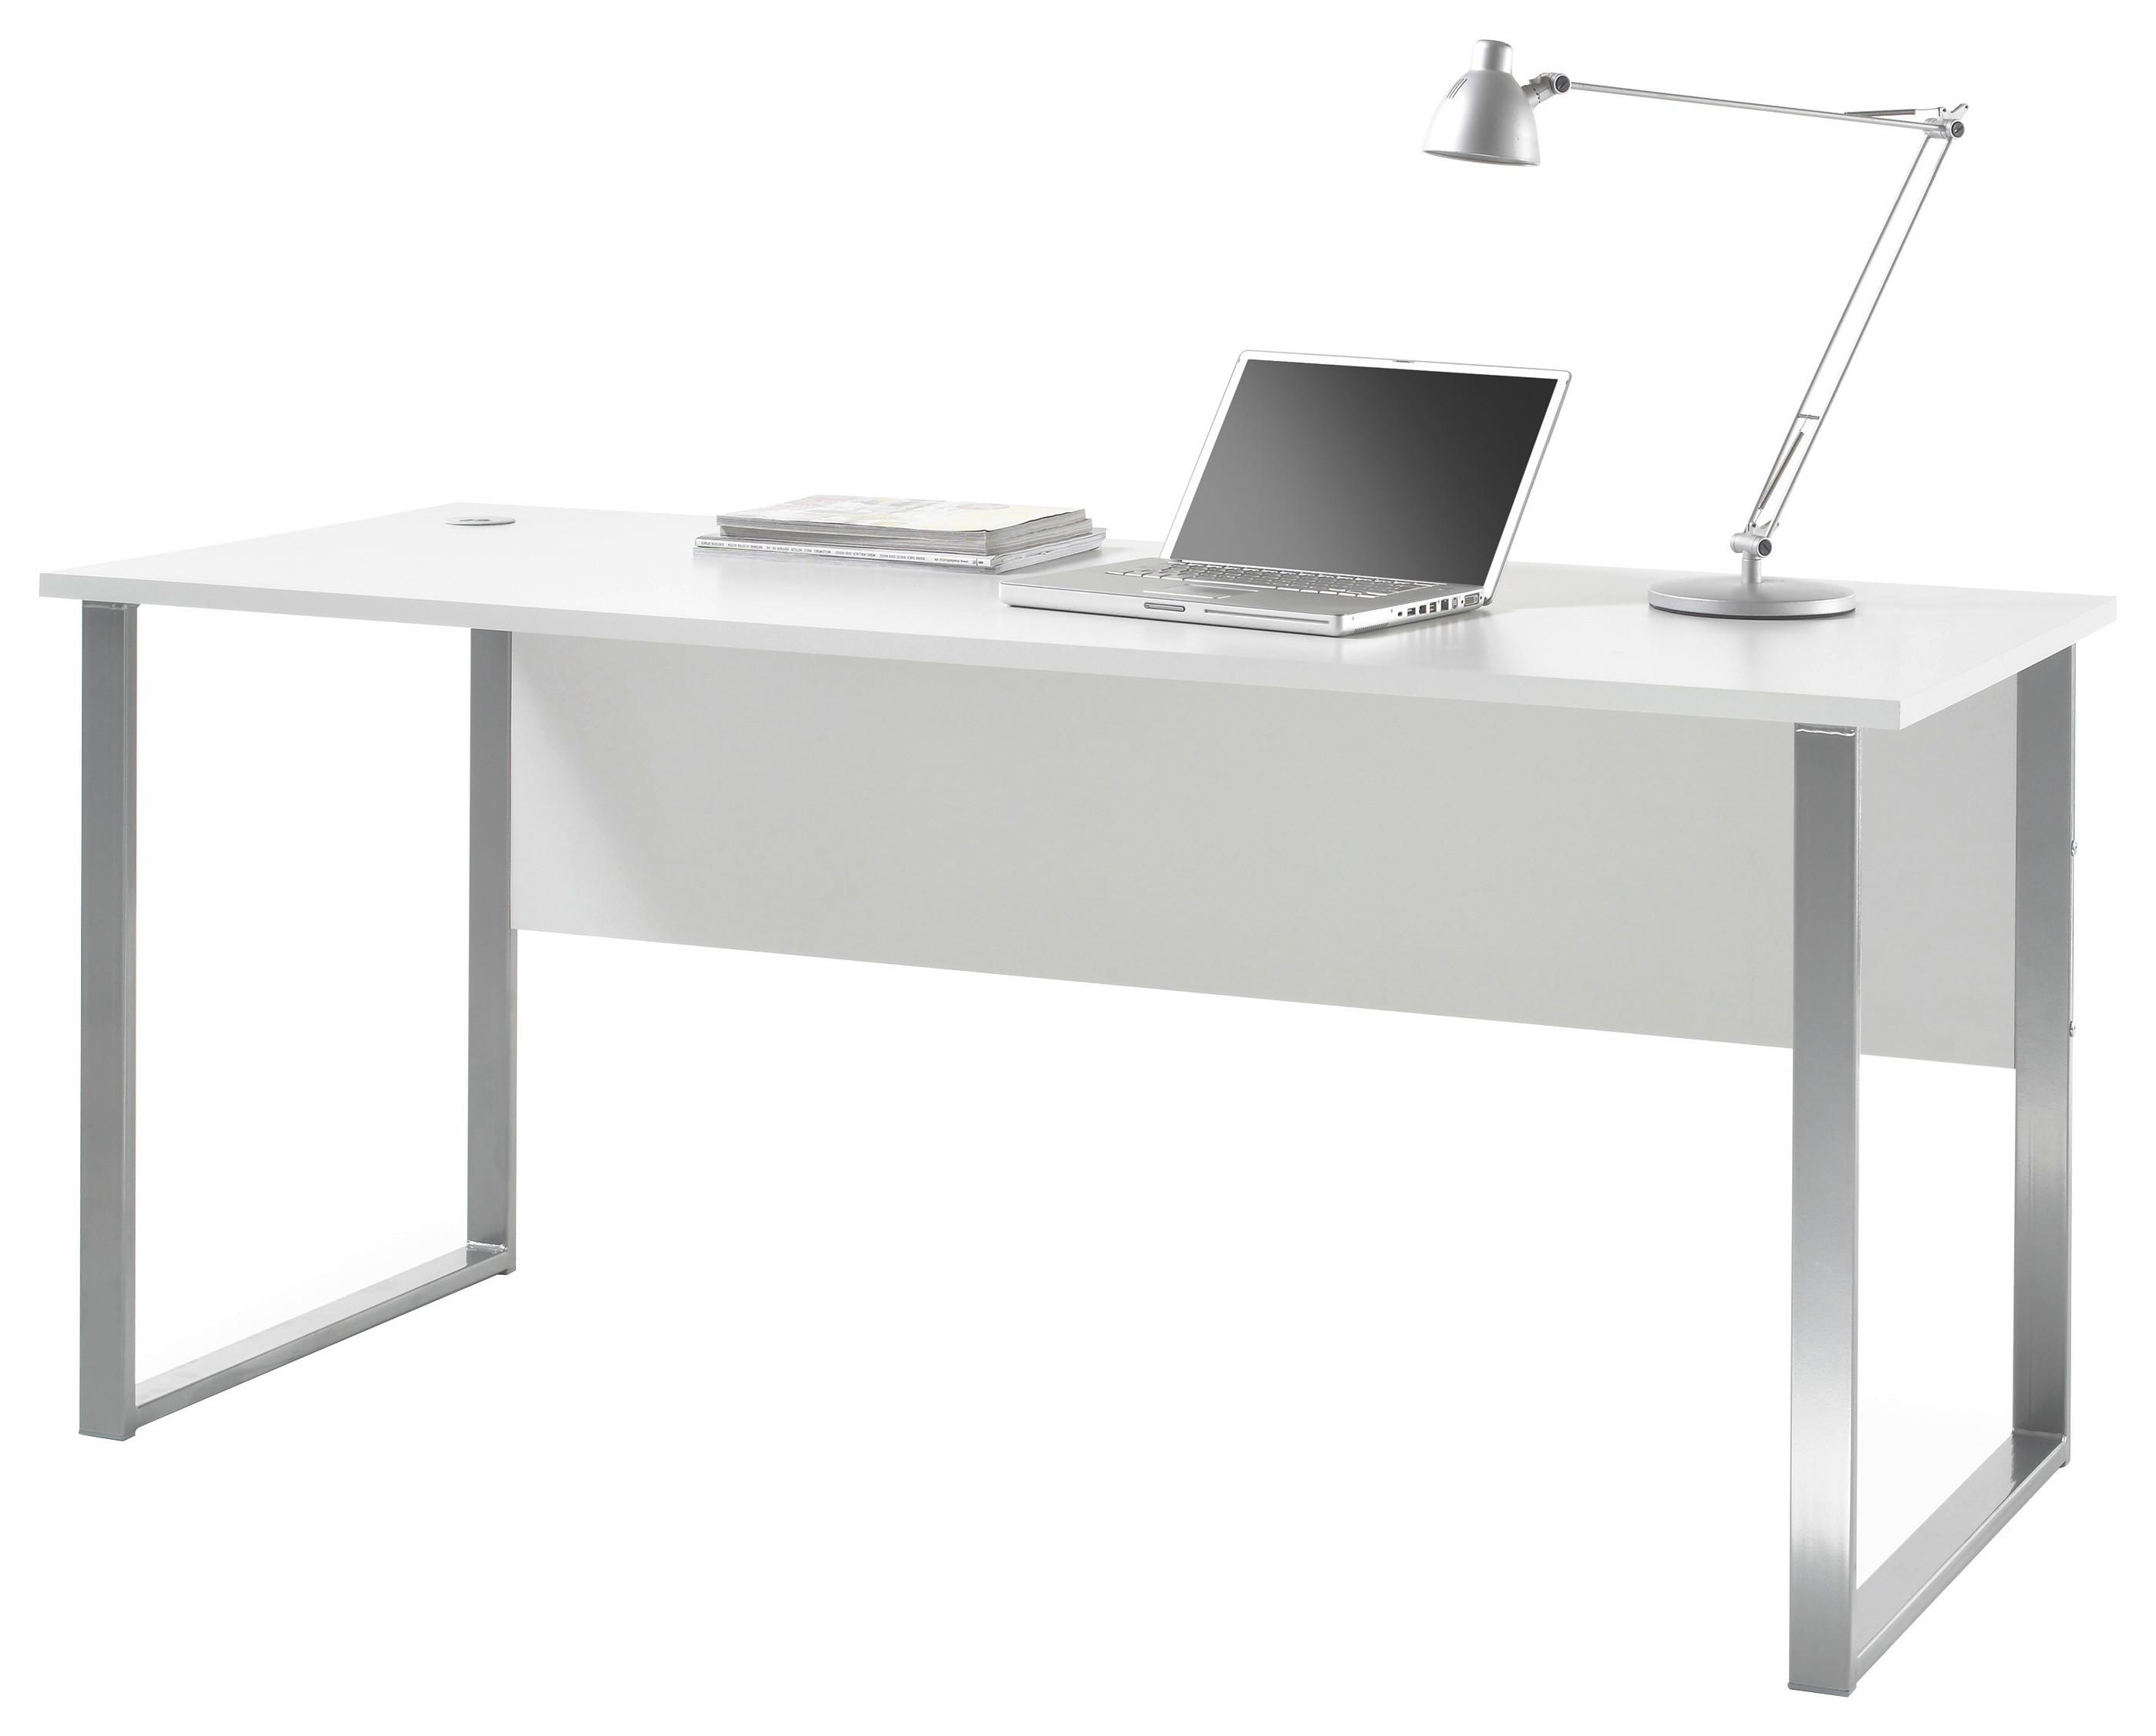 Schreibtisch B 170cm H 76cm Office Lux, Hellgrau - Silberfarben/Hellgrau, Design, Holzwerkstoff/Metall (170/73/76cm) - MID.YOU